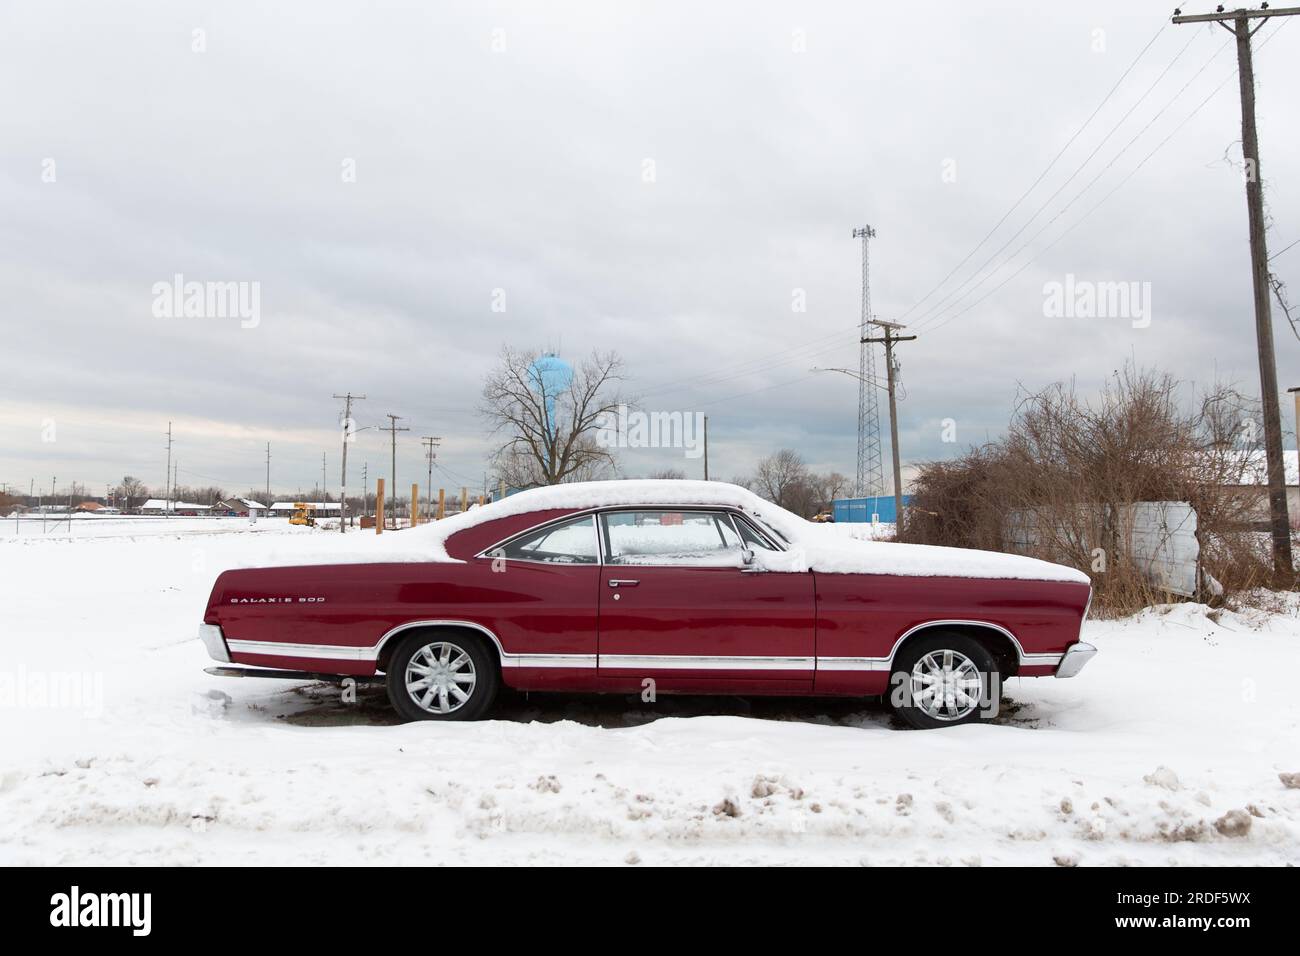 Une voiture rouge d'époque se trouve sur un paysage Americana couvert de neige Banque D'Images